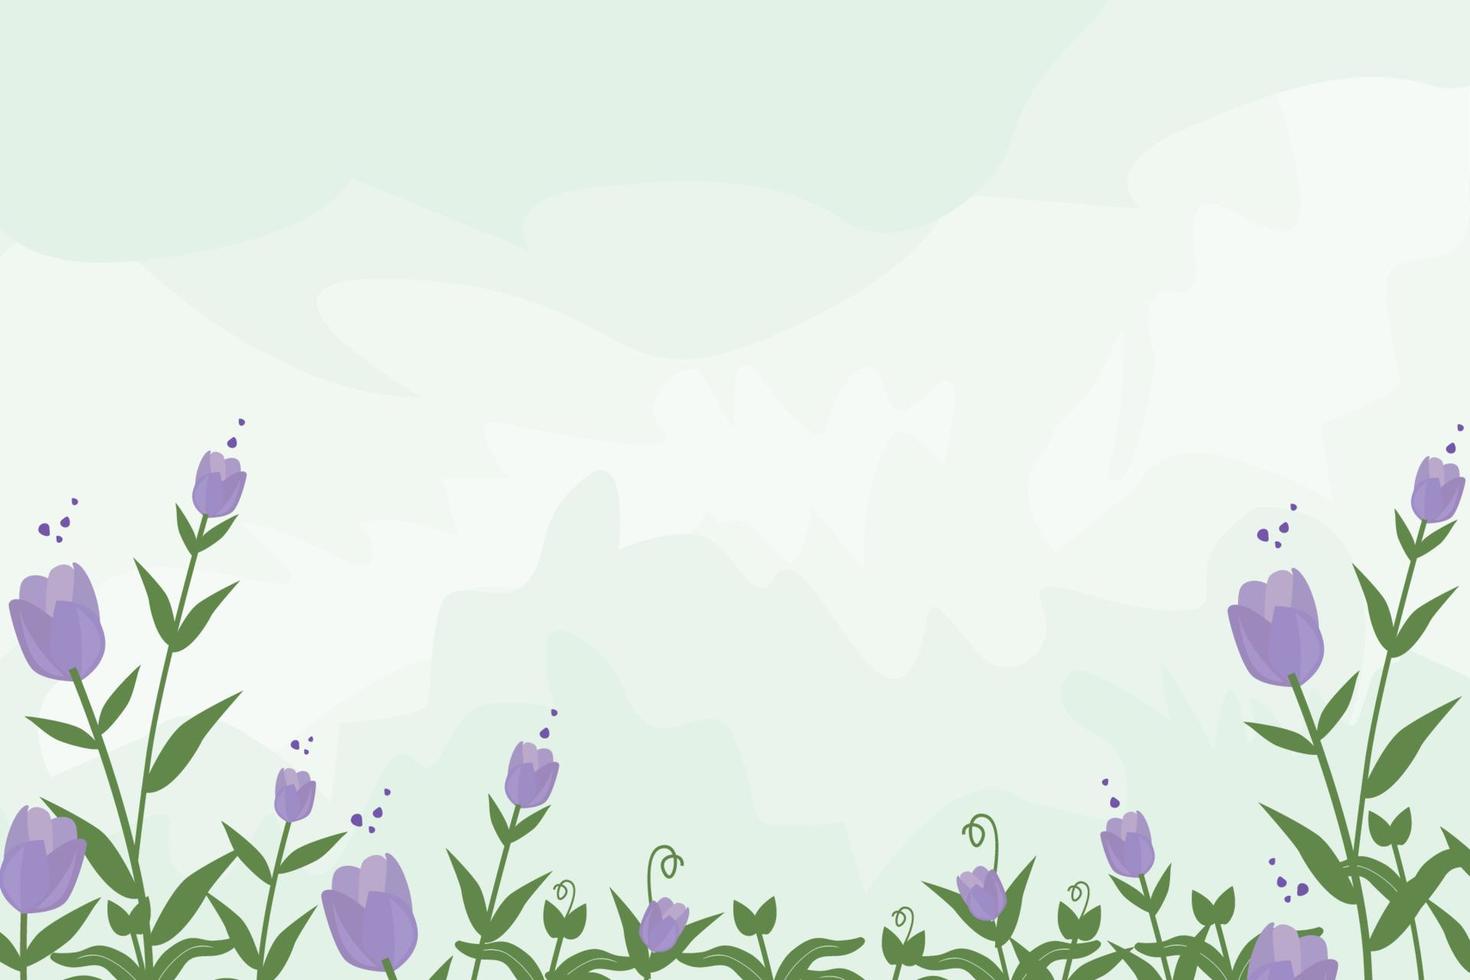 floraler Hintergrund minimalistisch mit handgezeichneten Blättern und lila Blütenelementen vektor